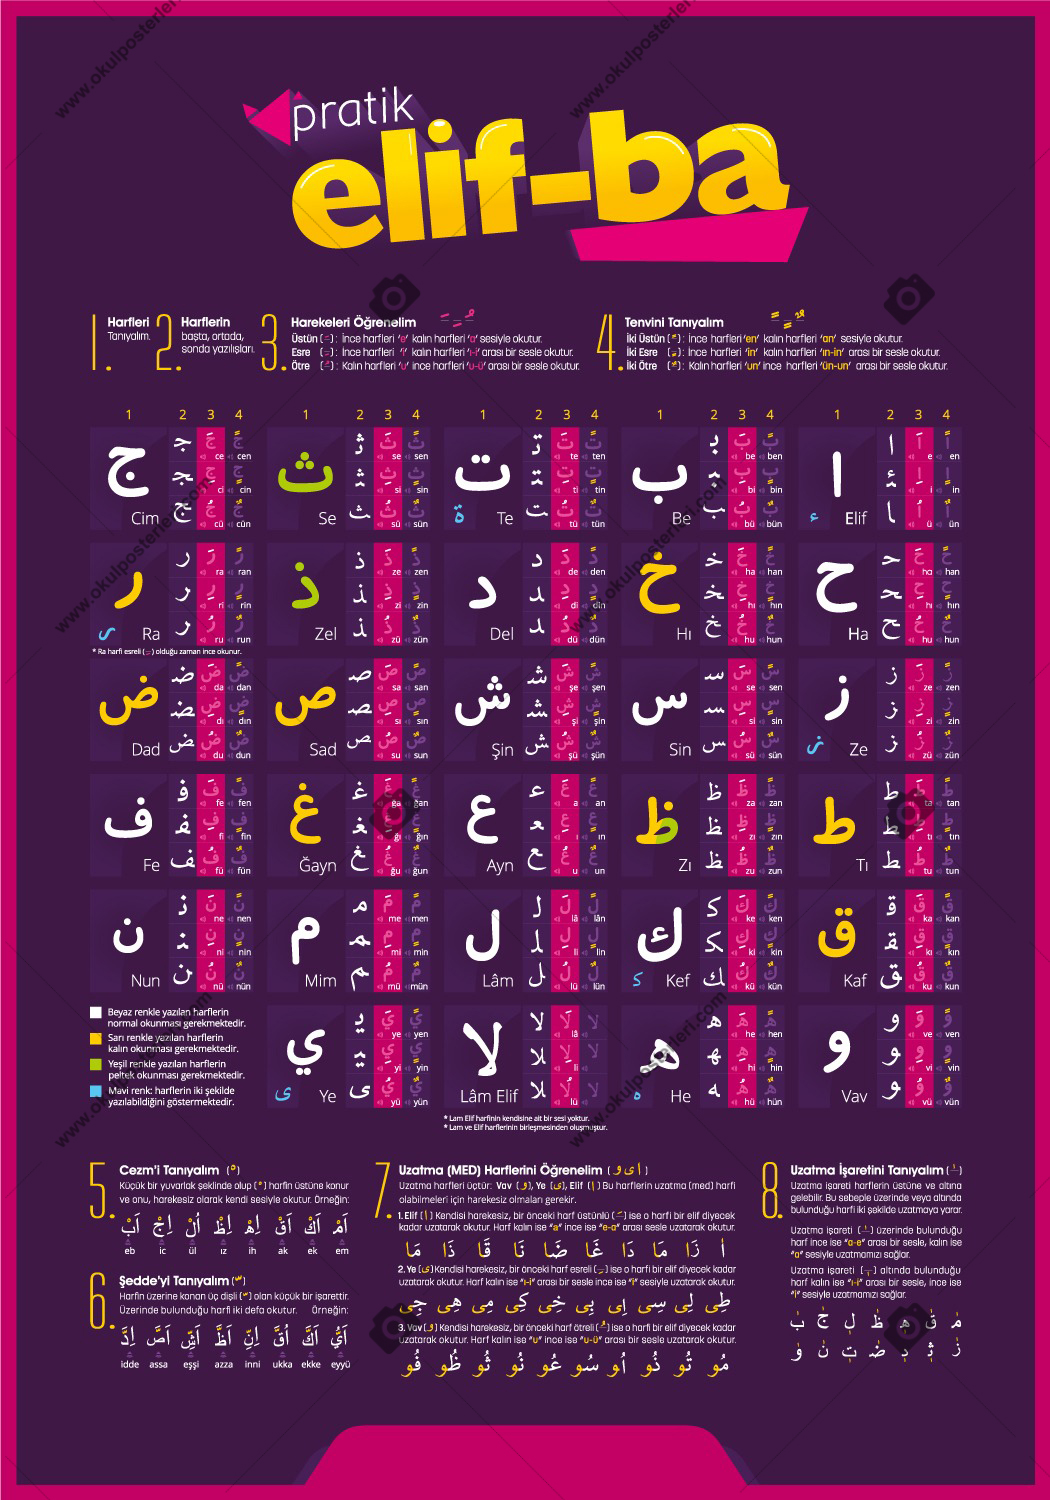 Pratik Elif-ba Arapça Afişi